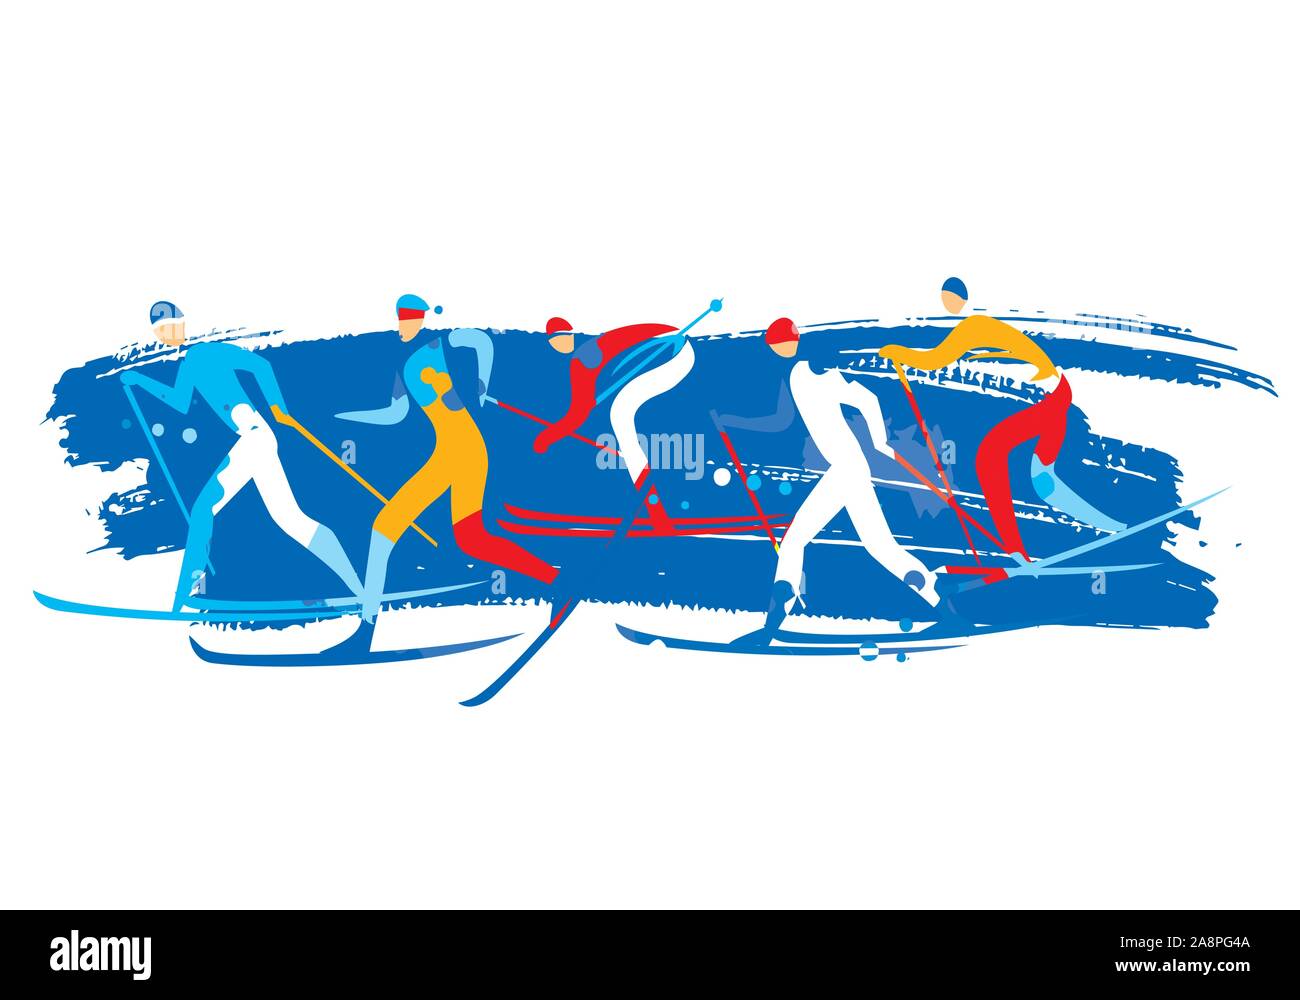 Les skieurs de fond. Un dessin stylisé expressif de pistes de ski de concurrents. Isolé sur fond blanc Vector disponibles. Illustration de Vecteur